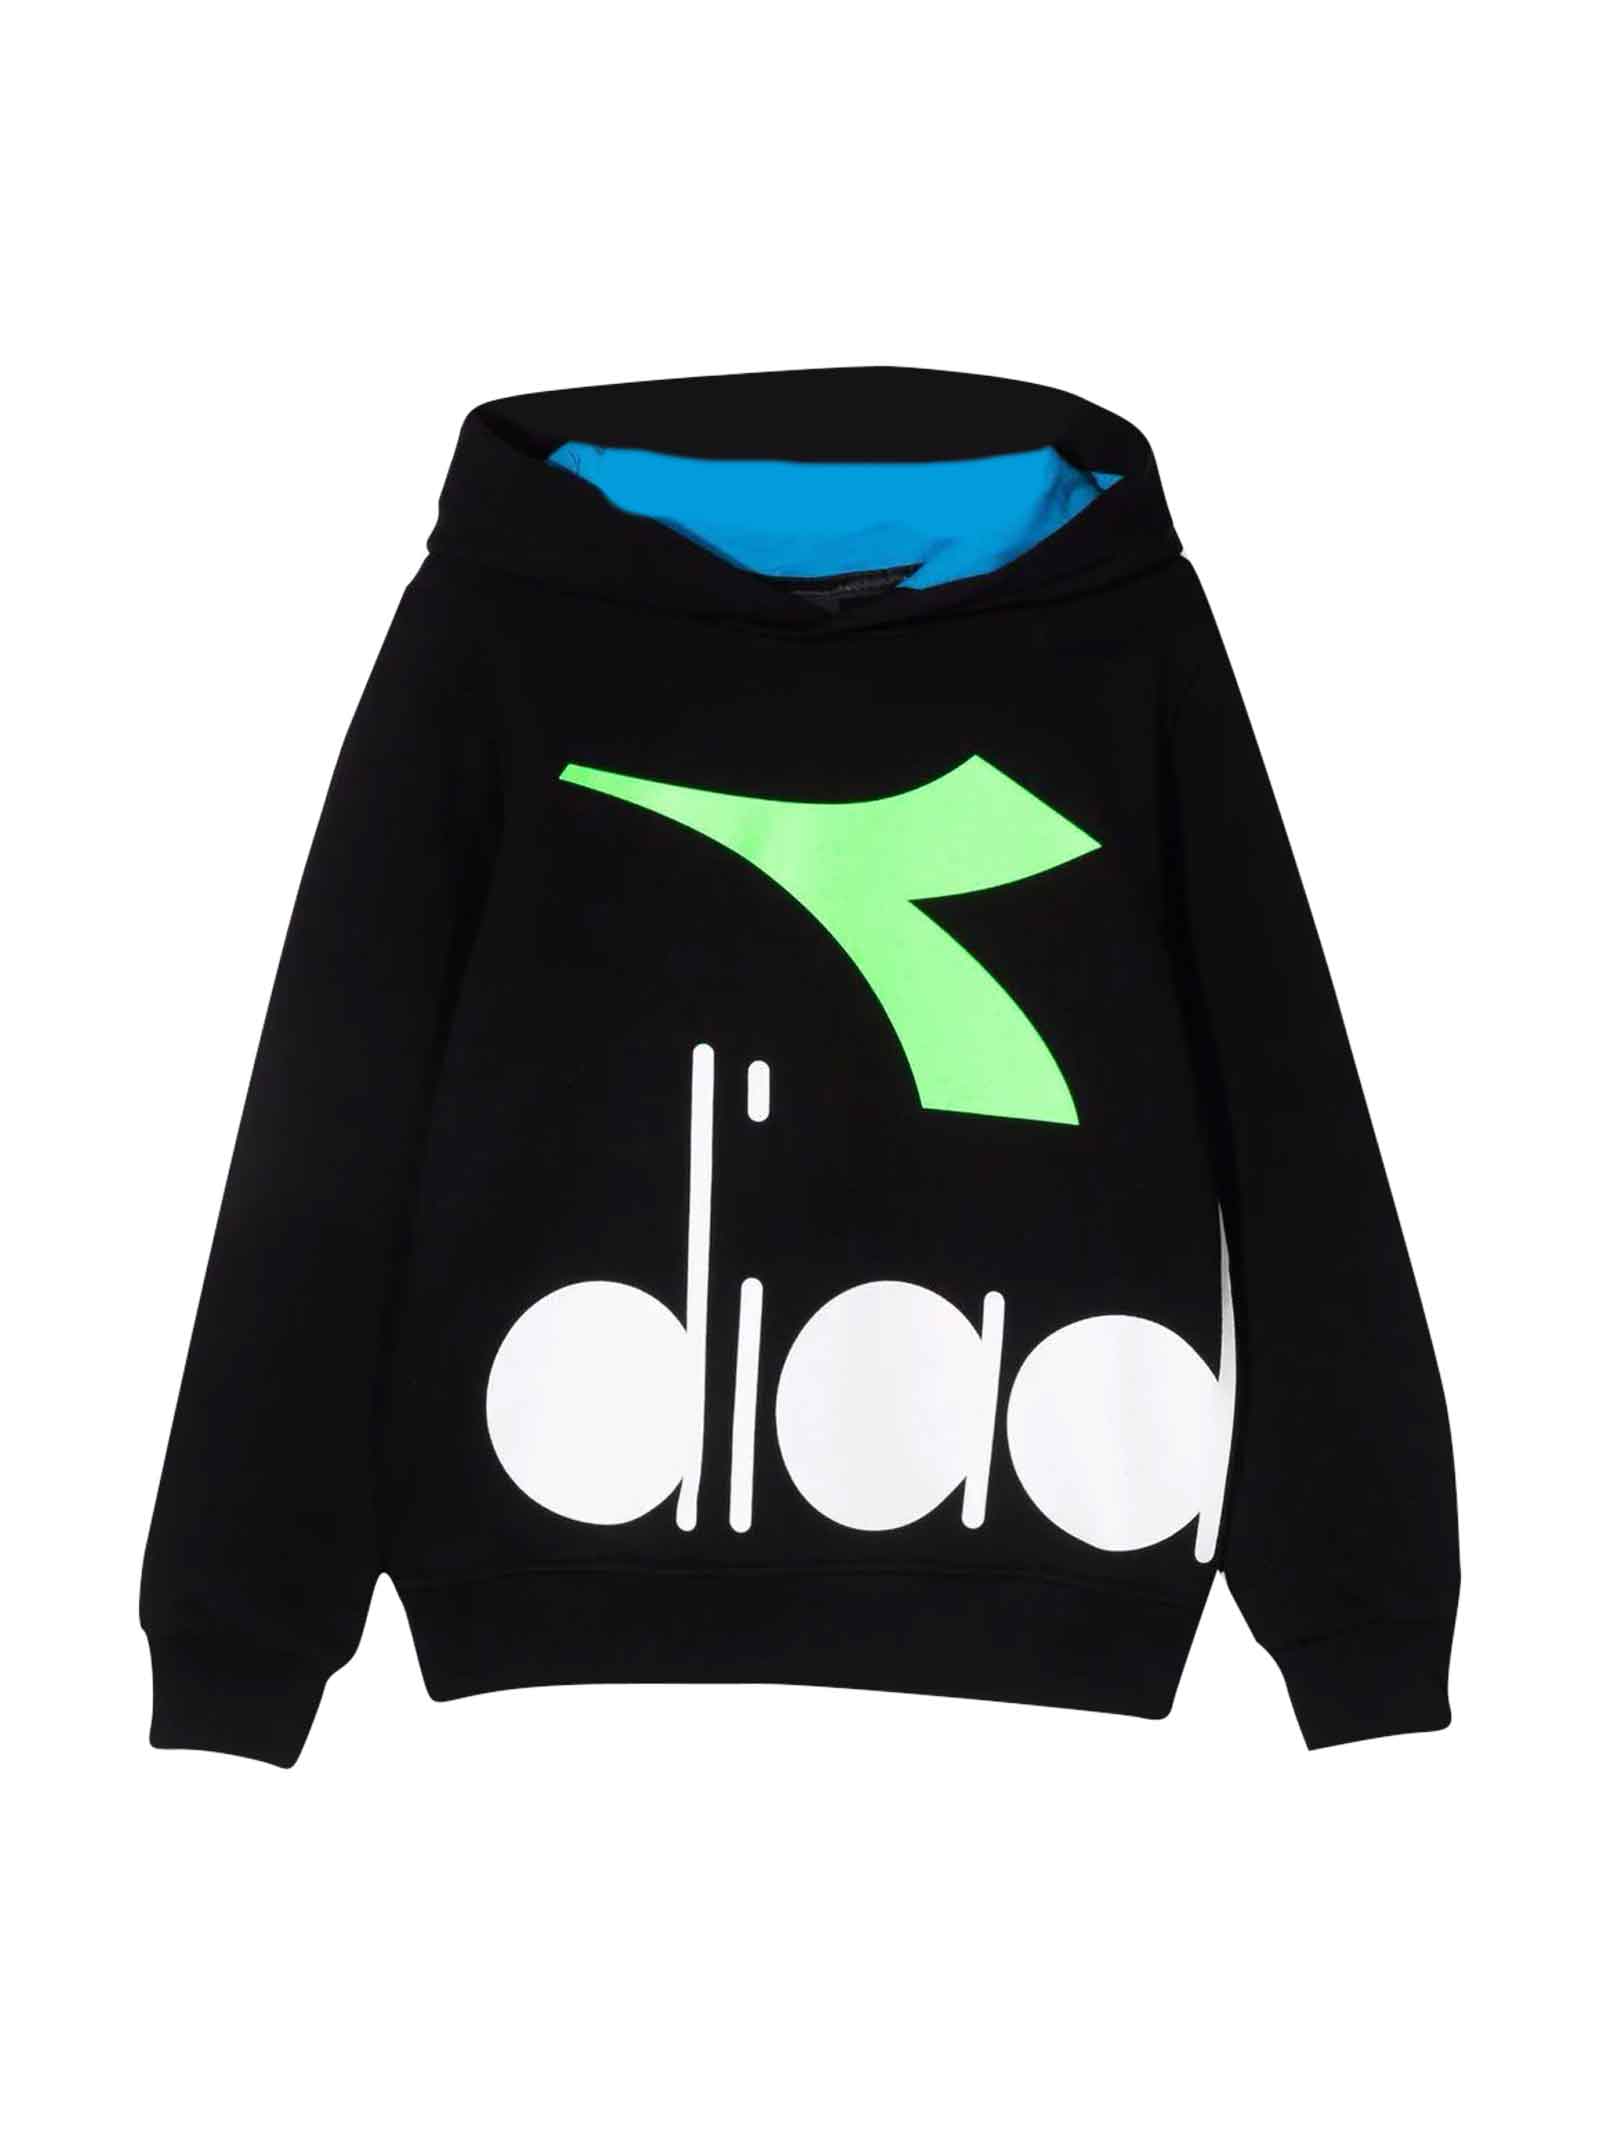 Diadora Black Sweatshirt Teen Boy